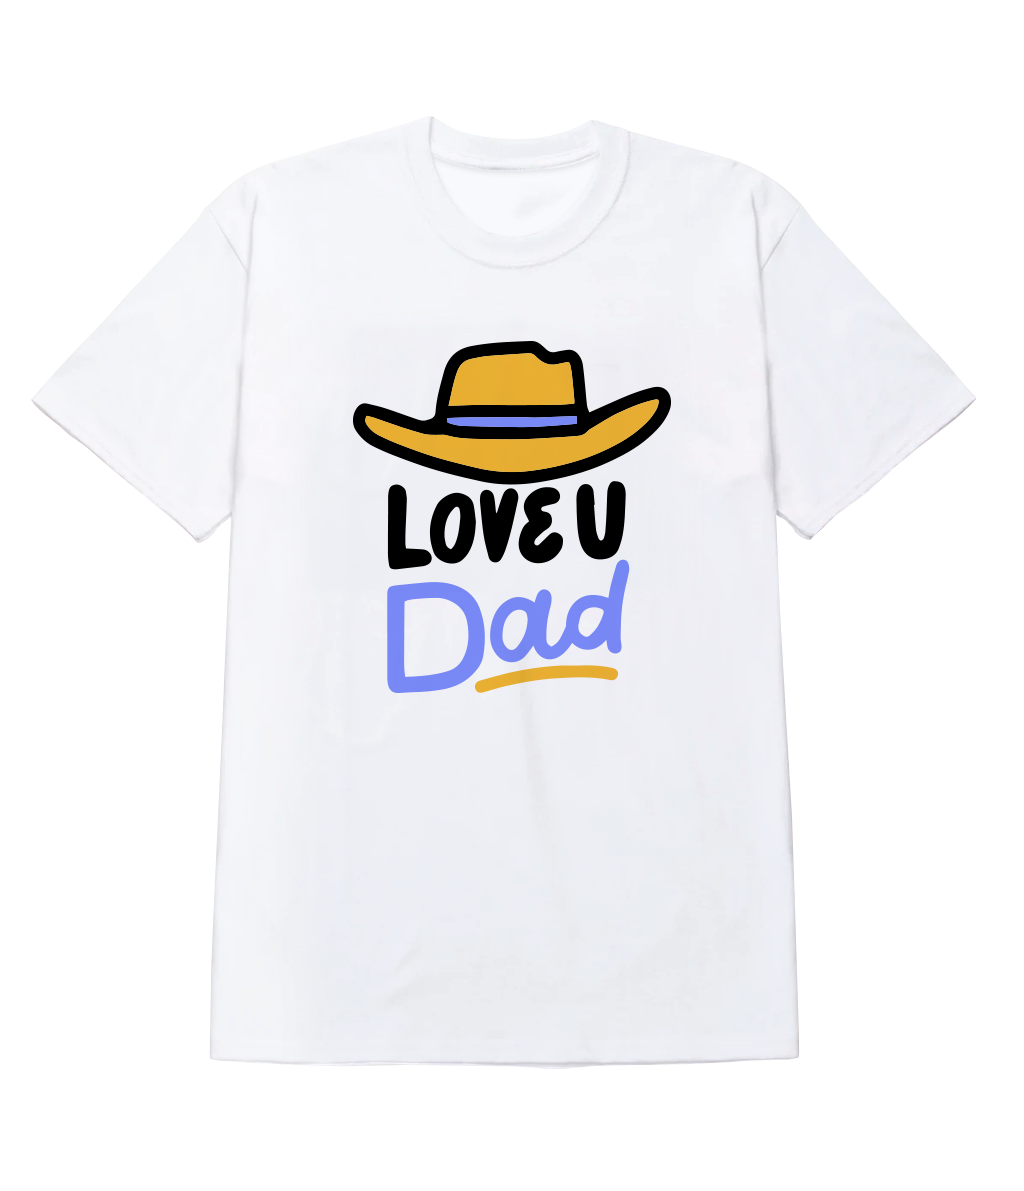 Polera - Love u Dad